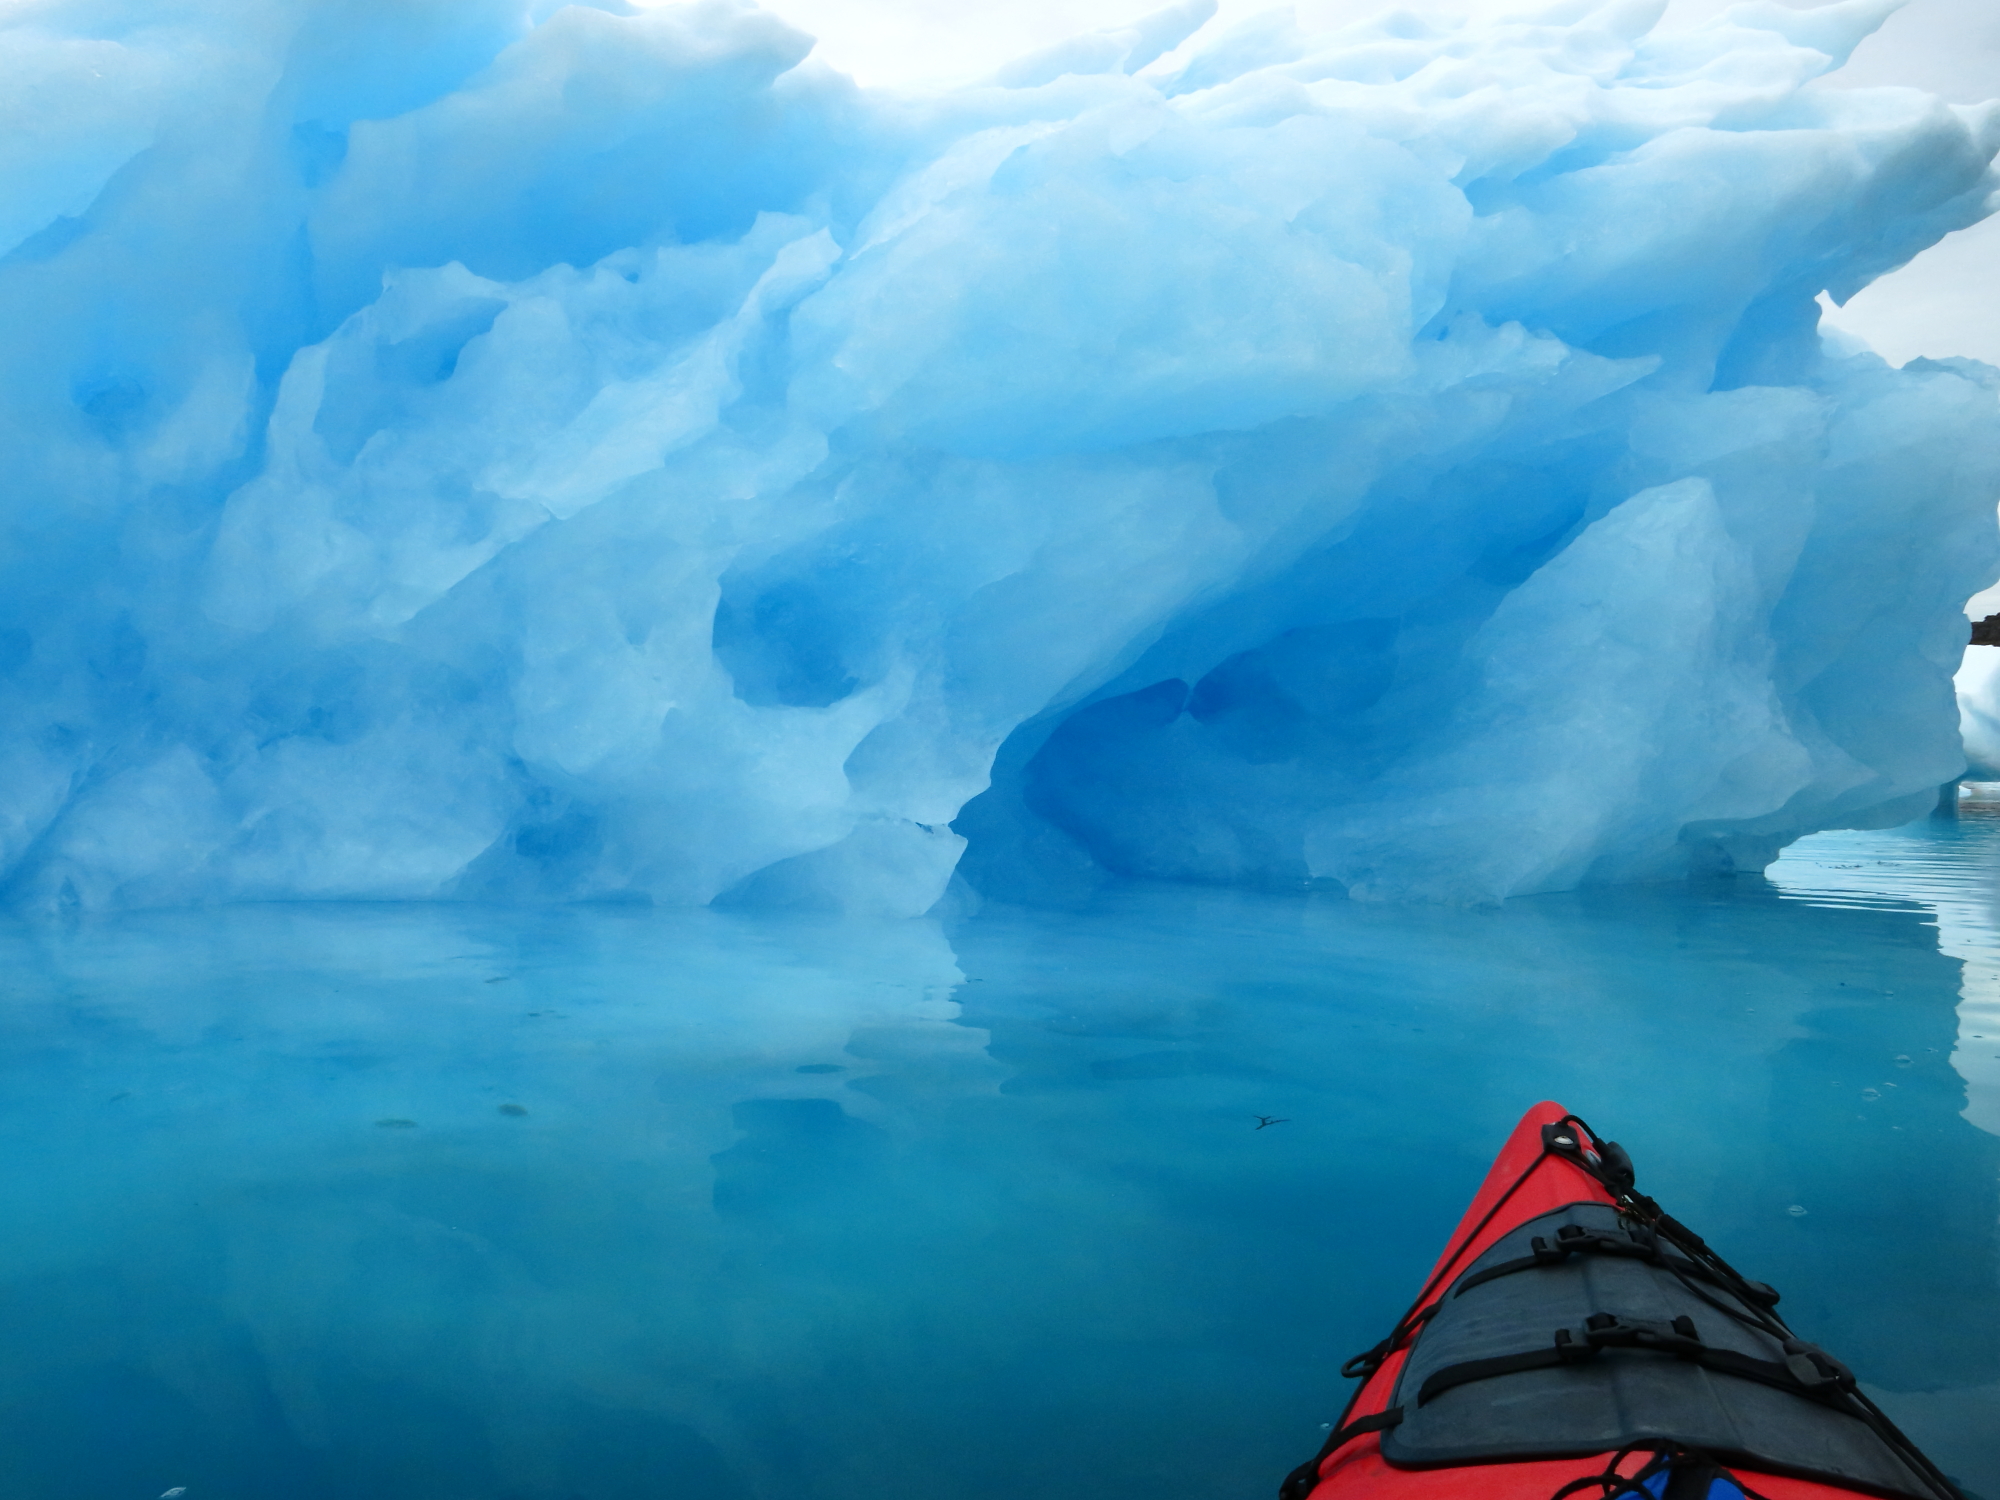 Tasiusaq-Kayaking Around Icebergs - Pearsall.9.15